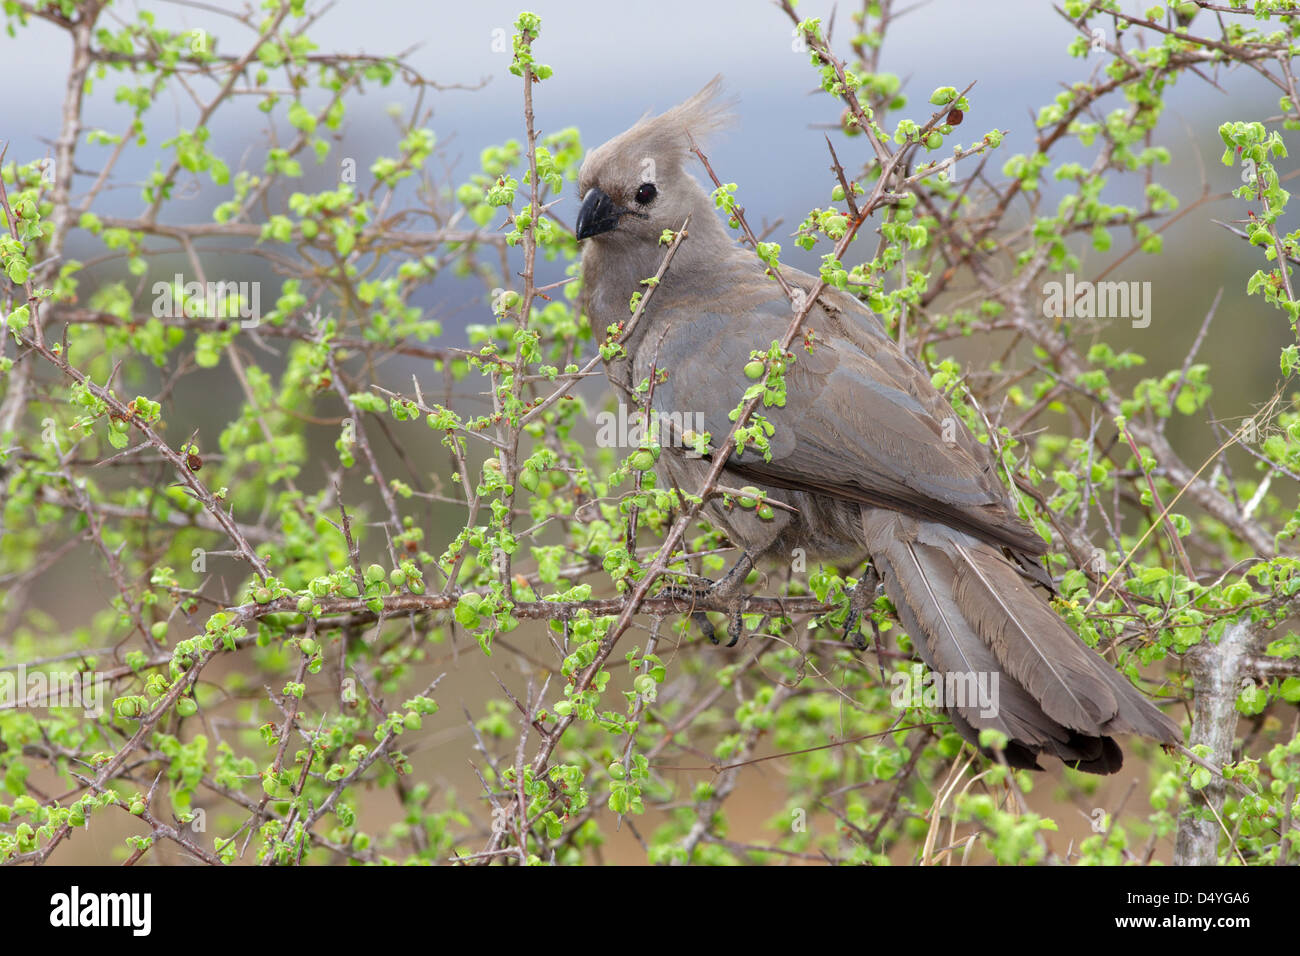 Die grau Go-away-Bird (Corythaixoides Concolor), auch bekannt als Lourie grau oder grau Loerie tritt im südlichen Afrika. Stockfoto